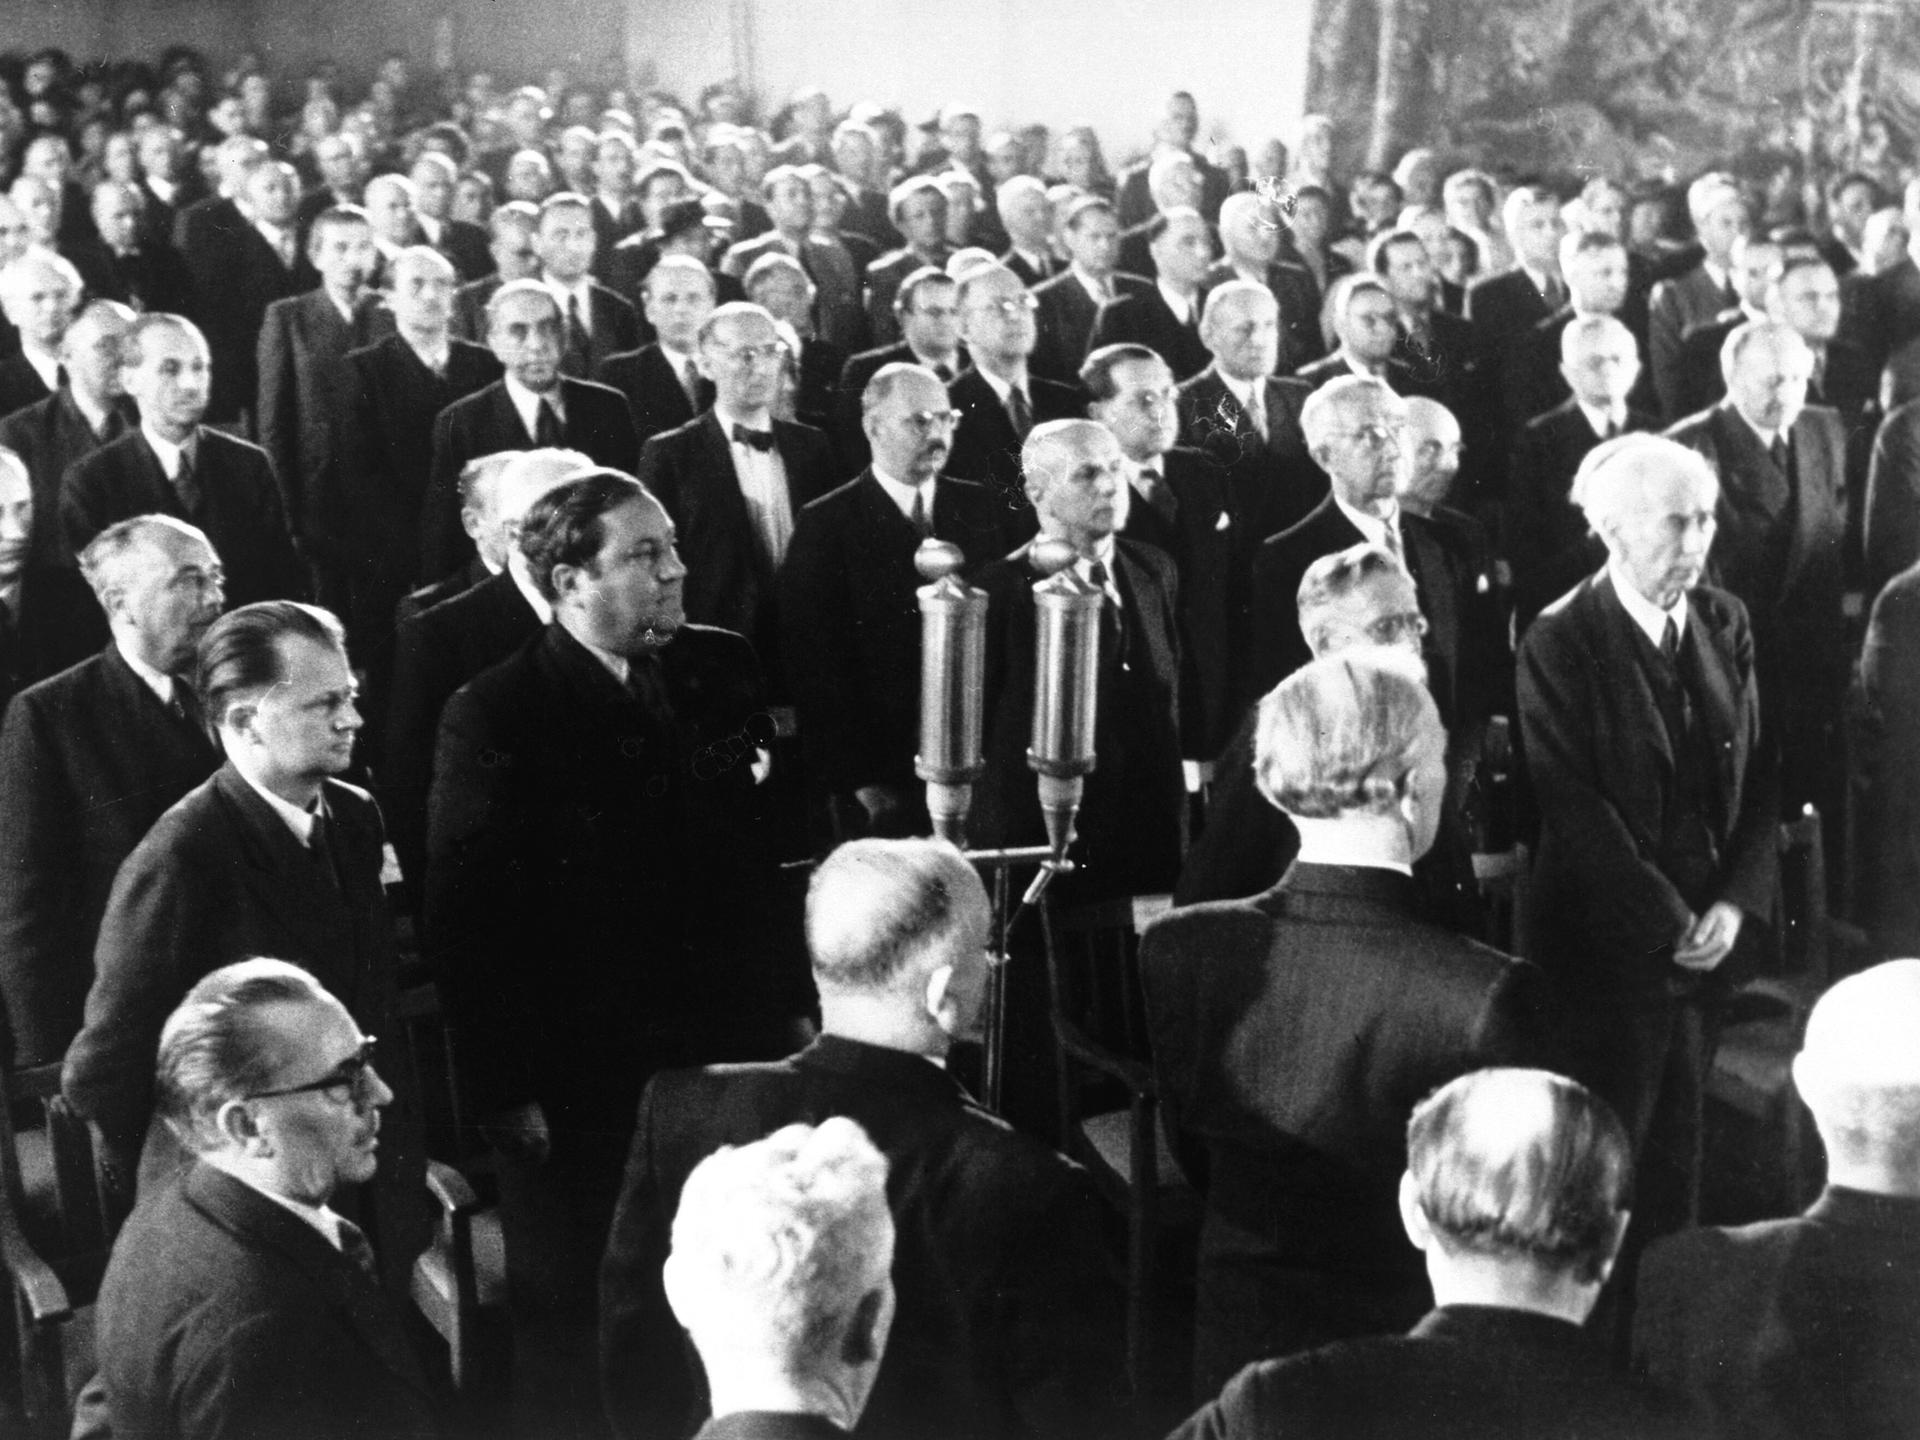 Verkündung des Grundgesetzes 1949. Gründung der Bundesrepublik Deutschland: 23. Mai 1949: Das Grundgesetz wird in der Schlusssitzung des Parlamentarischen Rates offiziell verkündet. 